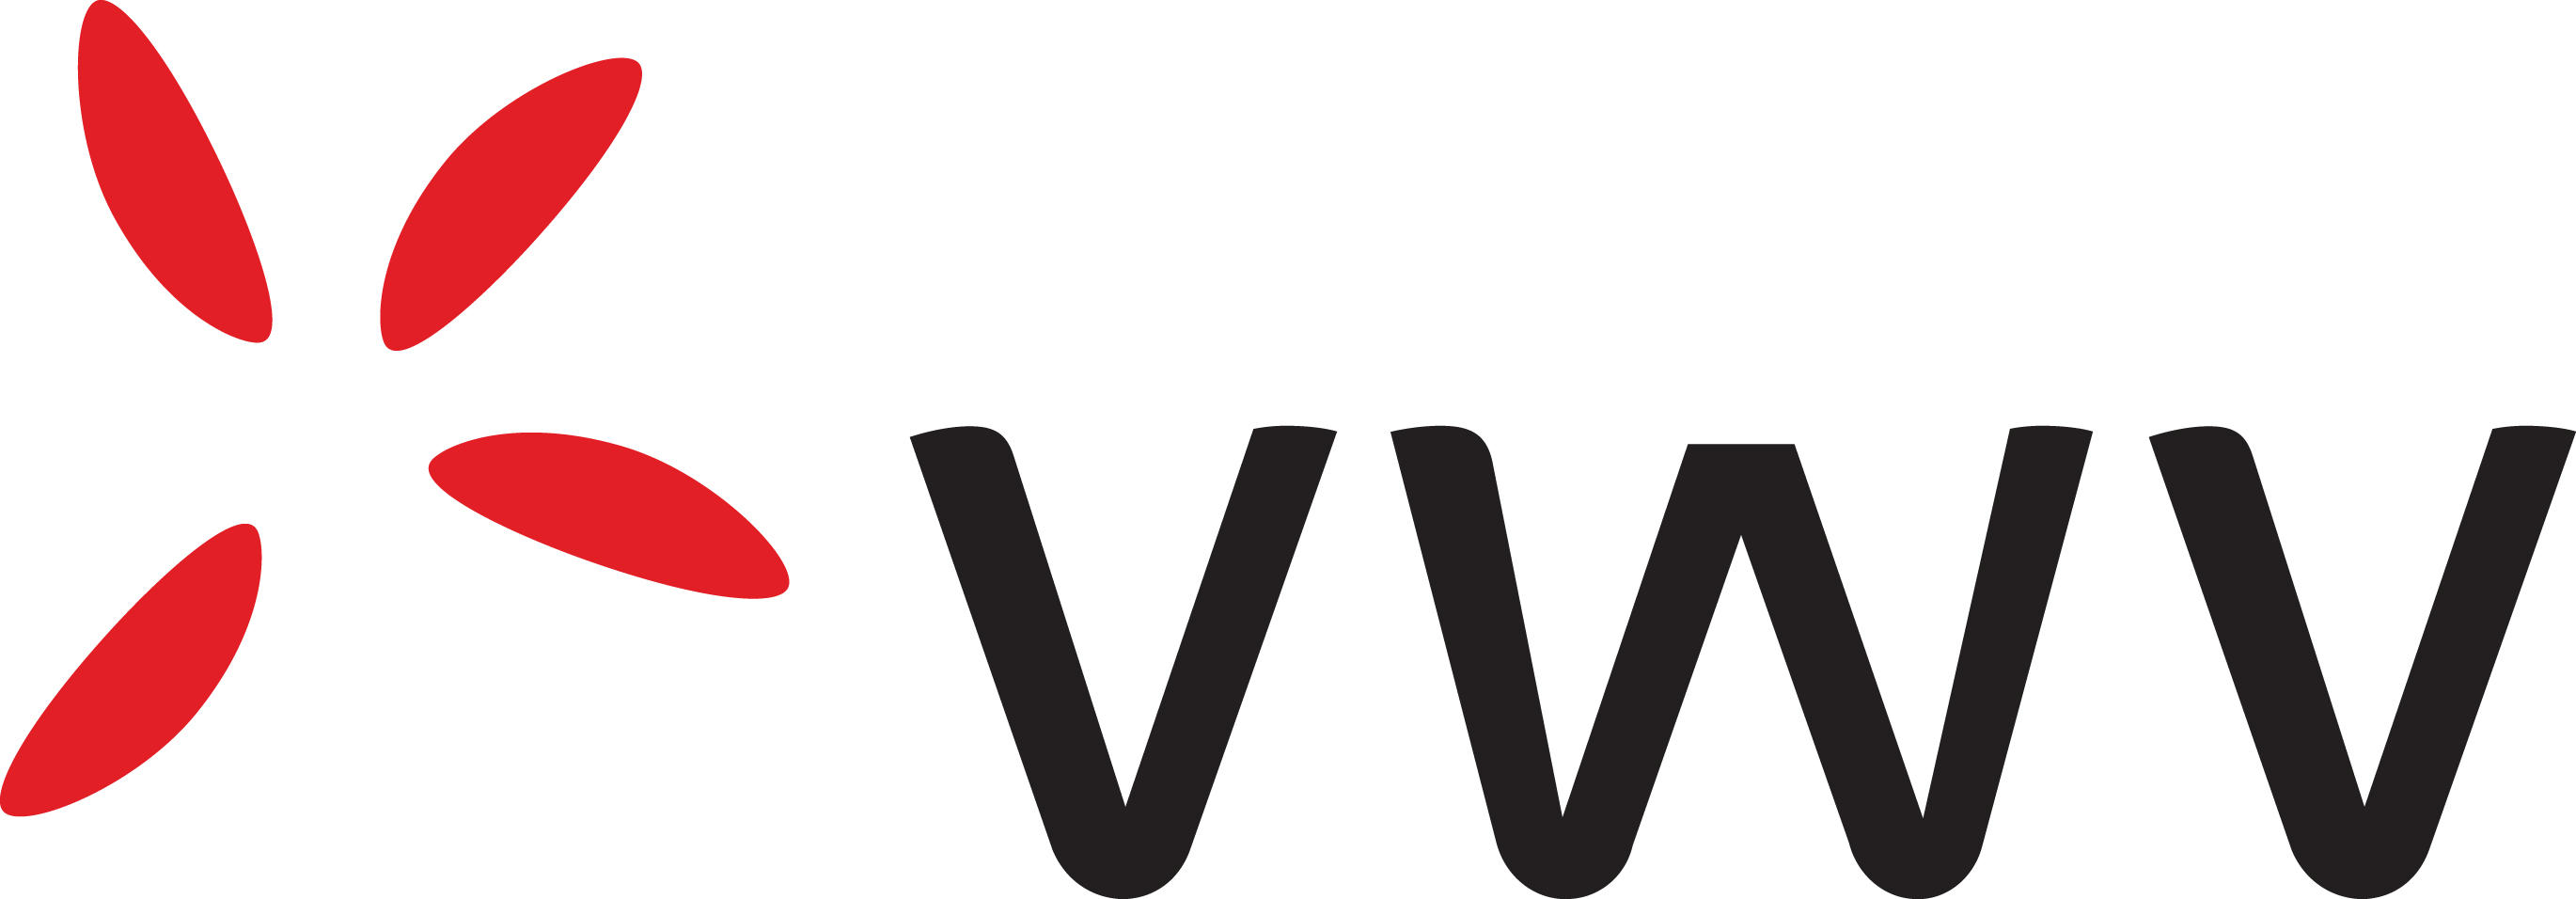 VWV-Logo-RGB.jpg 1